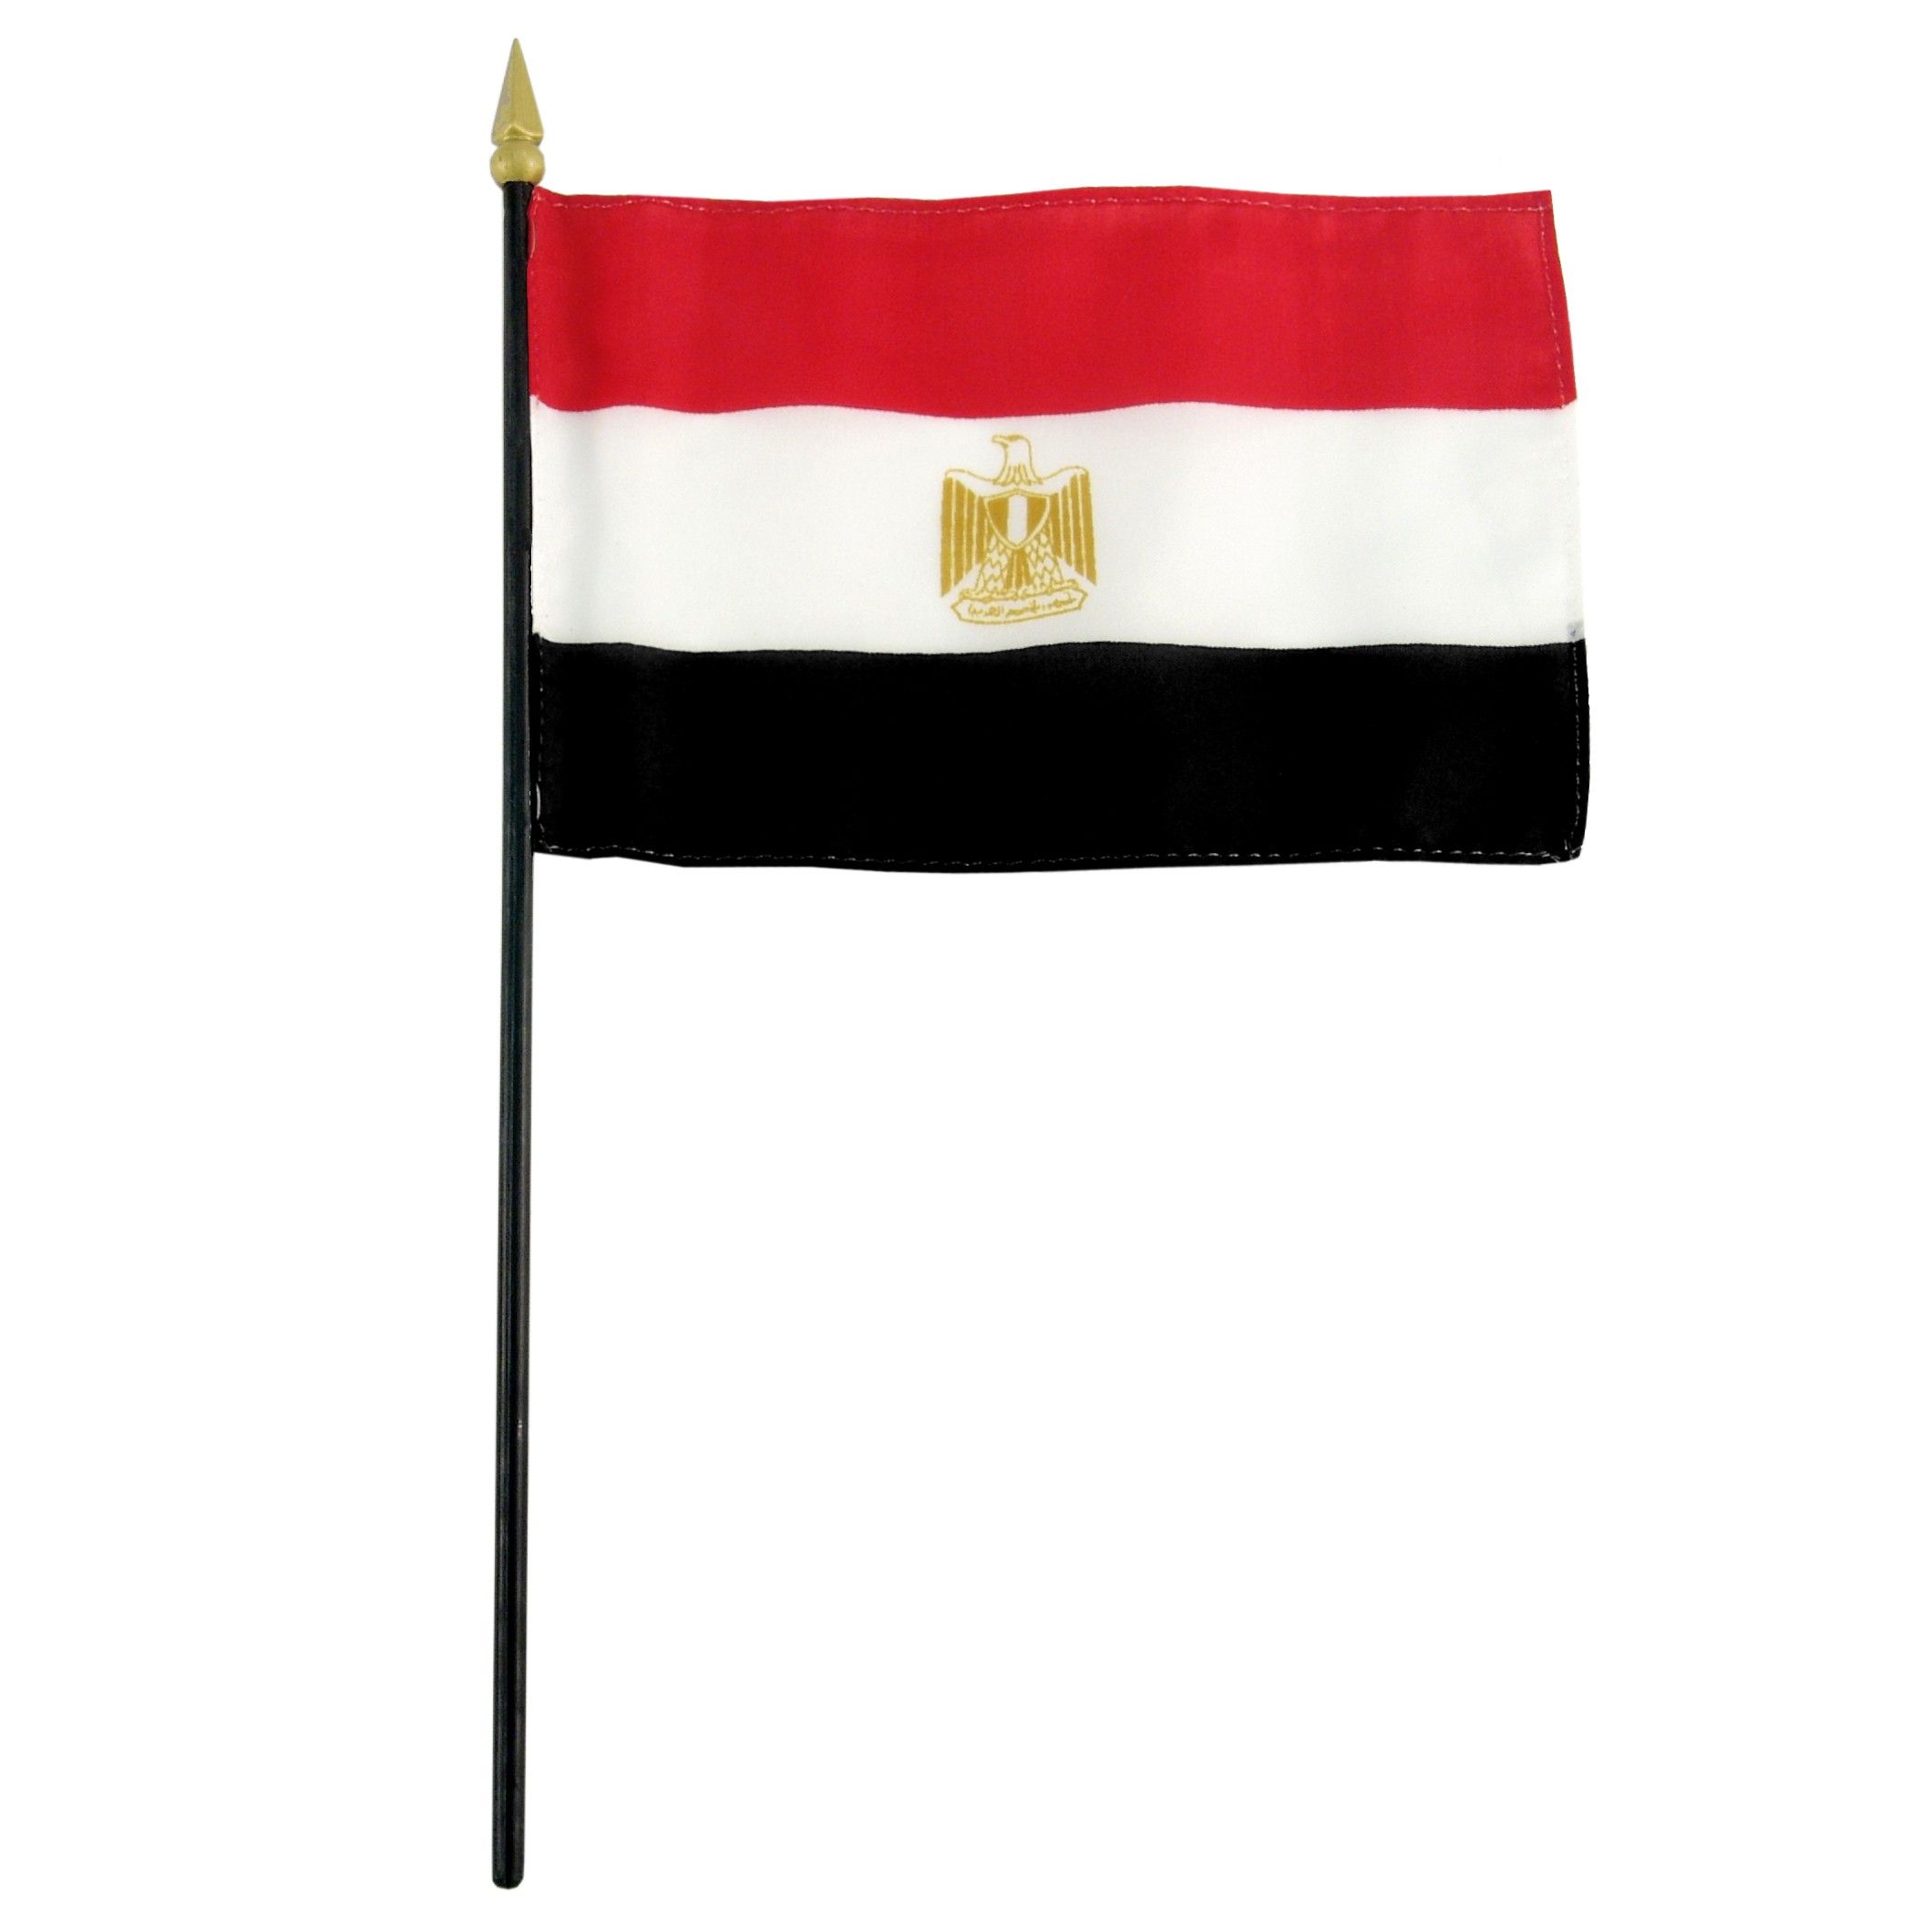 Flag Of Egypt wallpaper, Misc, HQ Flag Of Egypt pictureK Wallpaper 2019